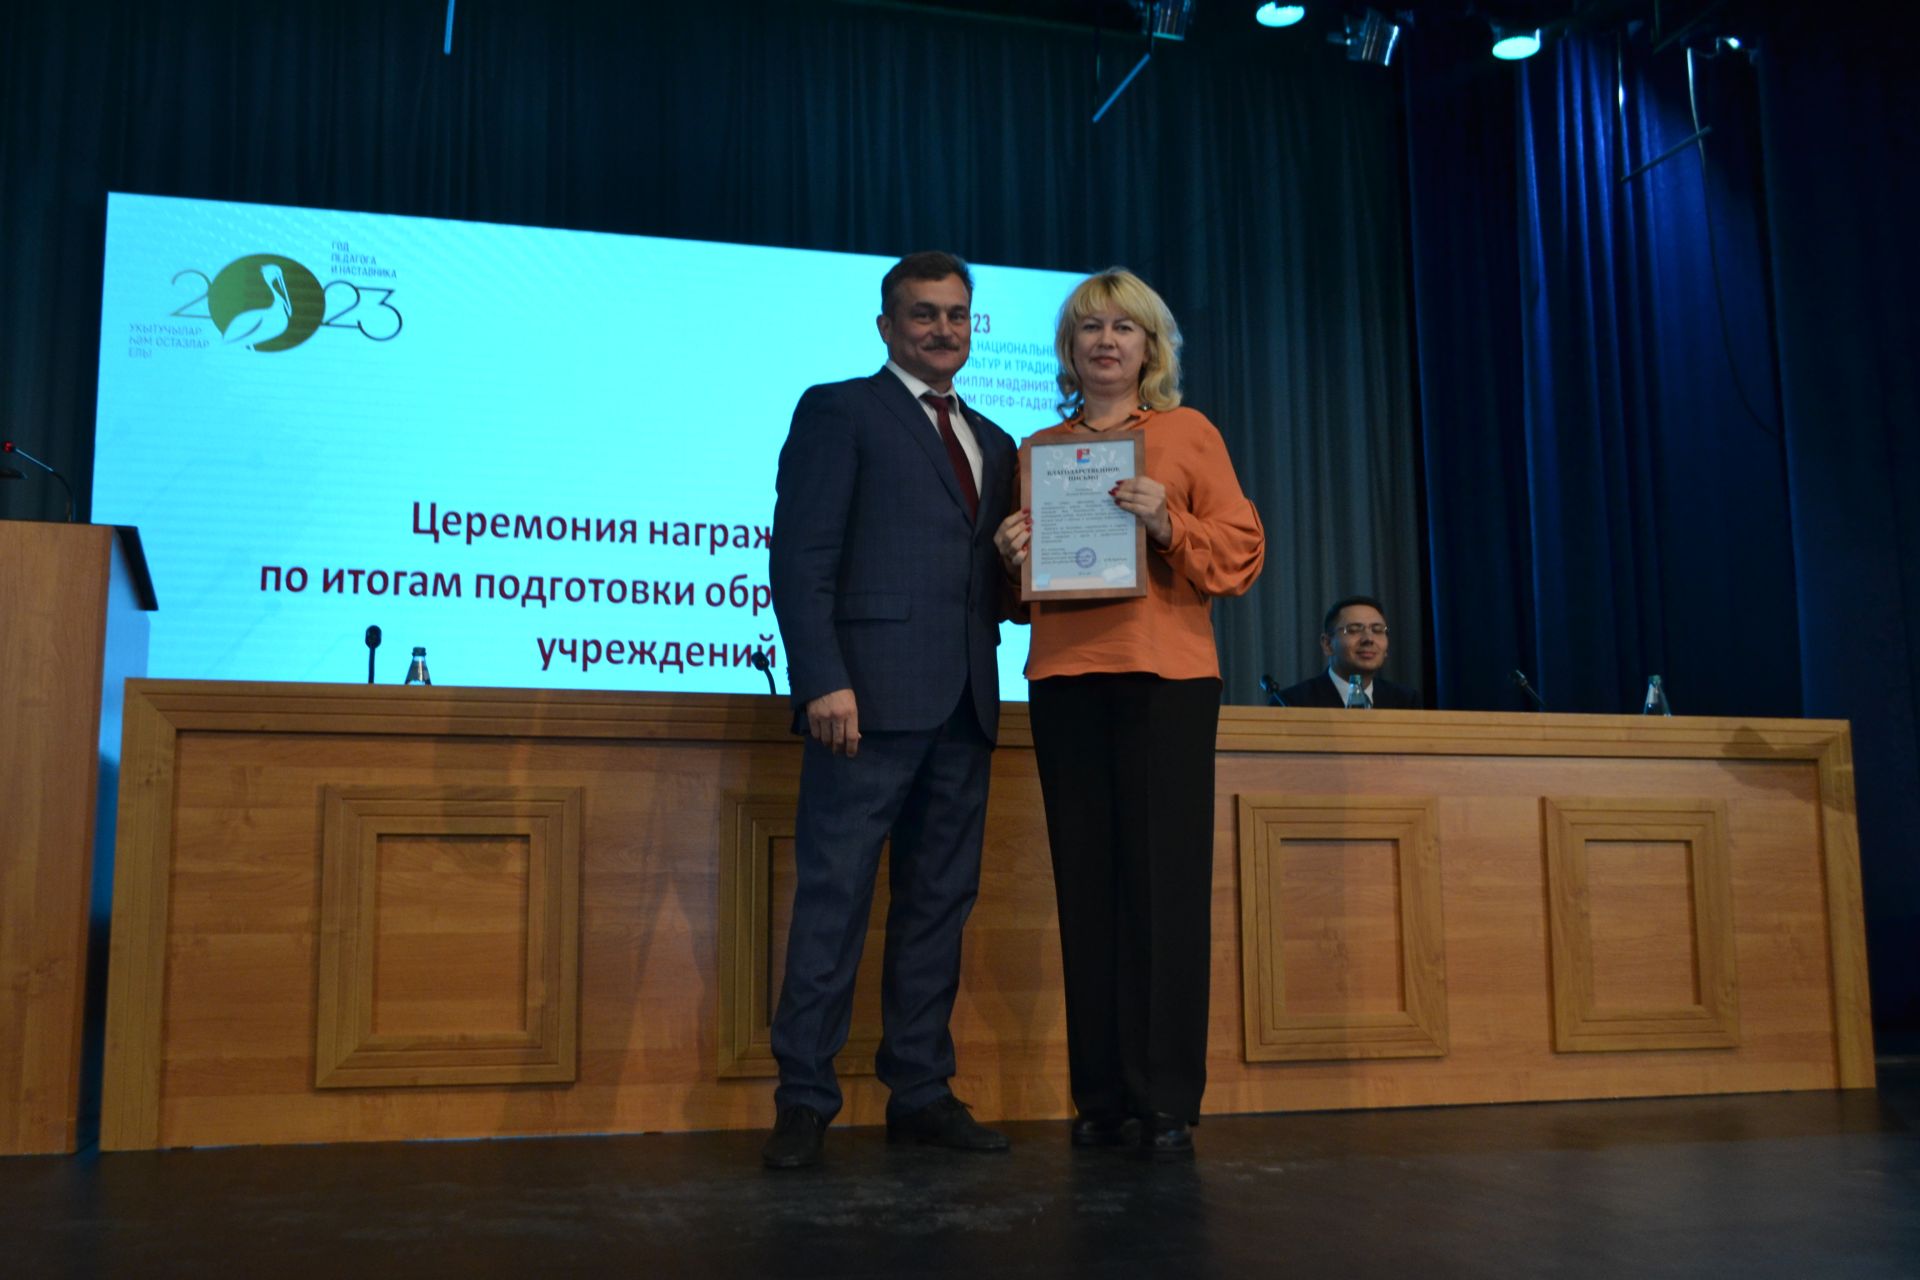 Марат Зиатдинов: «Наша главная задача - повышение качества образования детей»